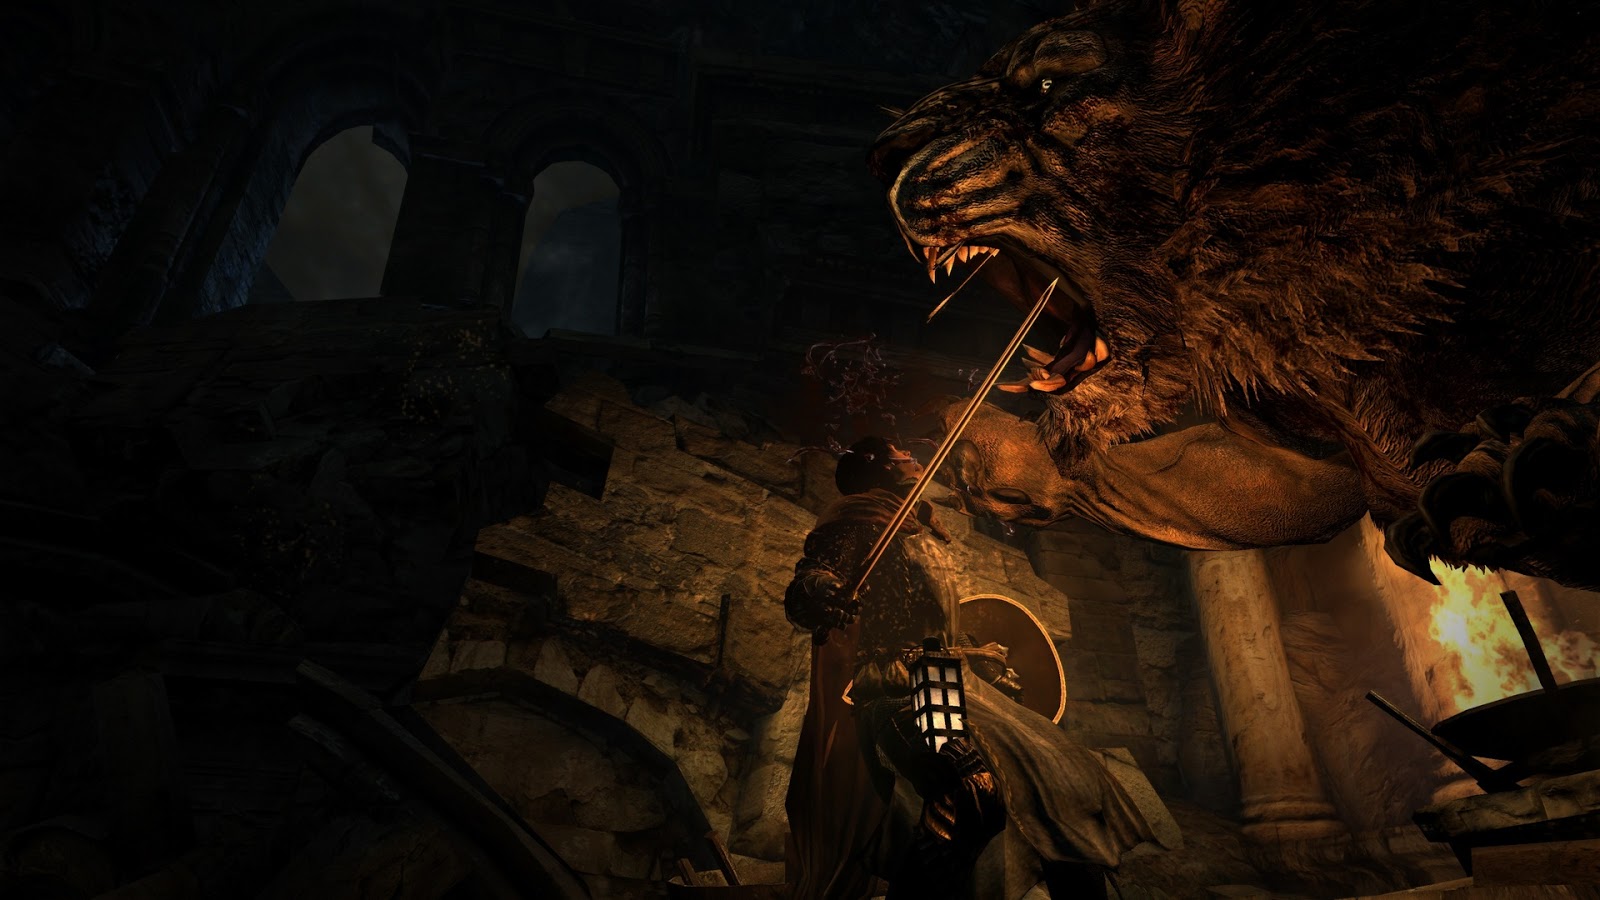 Dragon's Dogma: Dark Arisen (Multi) - divulgadas data de lançamento e valor  da nova versão para PC - GameBlast